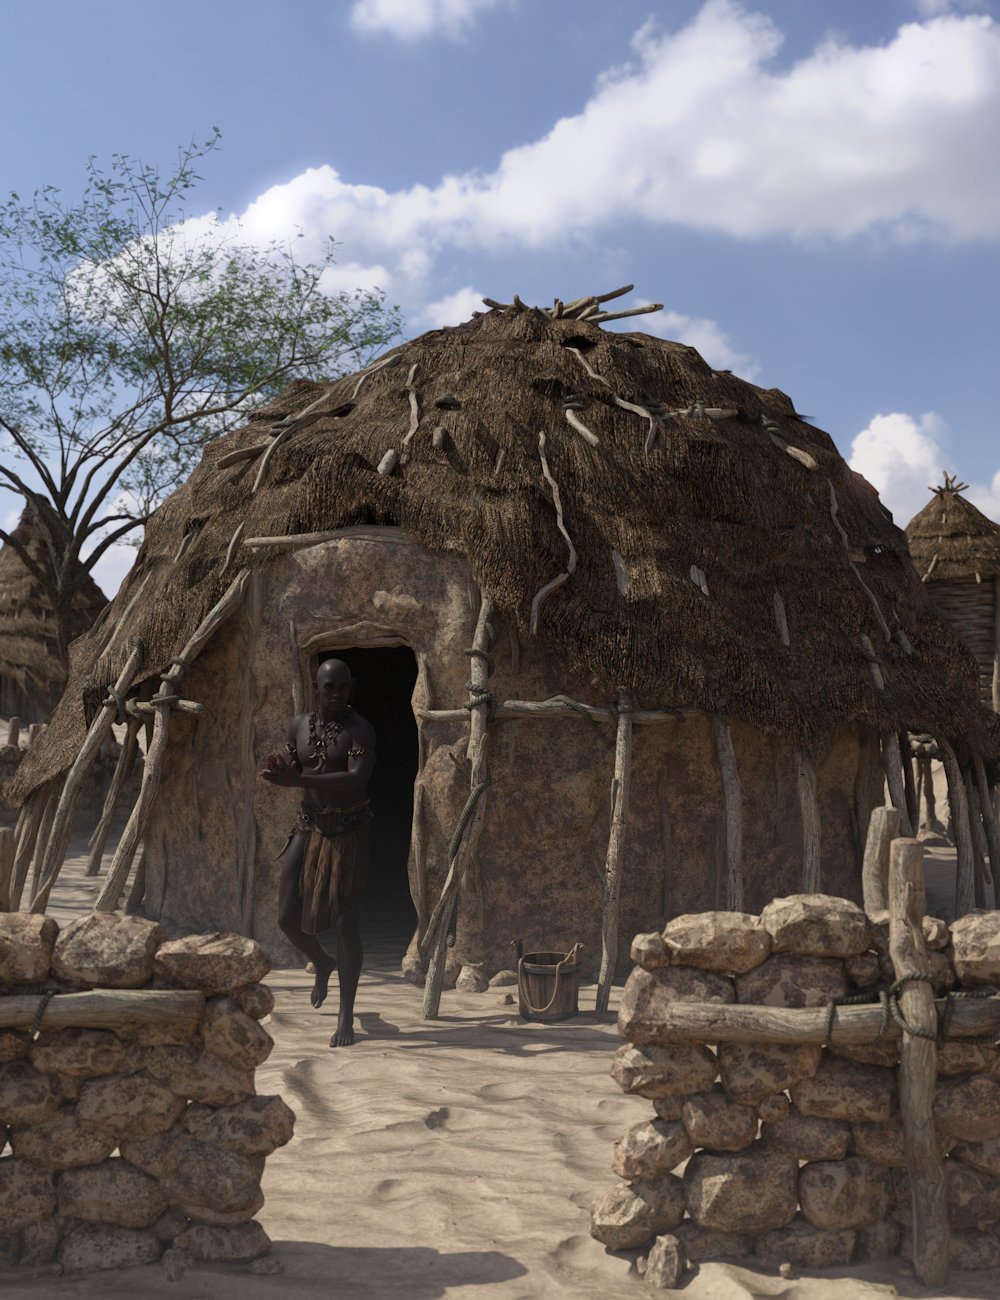 Desert Huts 2 by: Enterables, 3D Models by Daz 3D